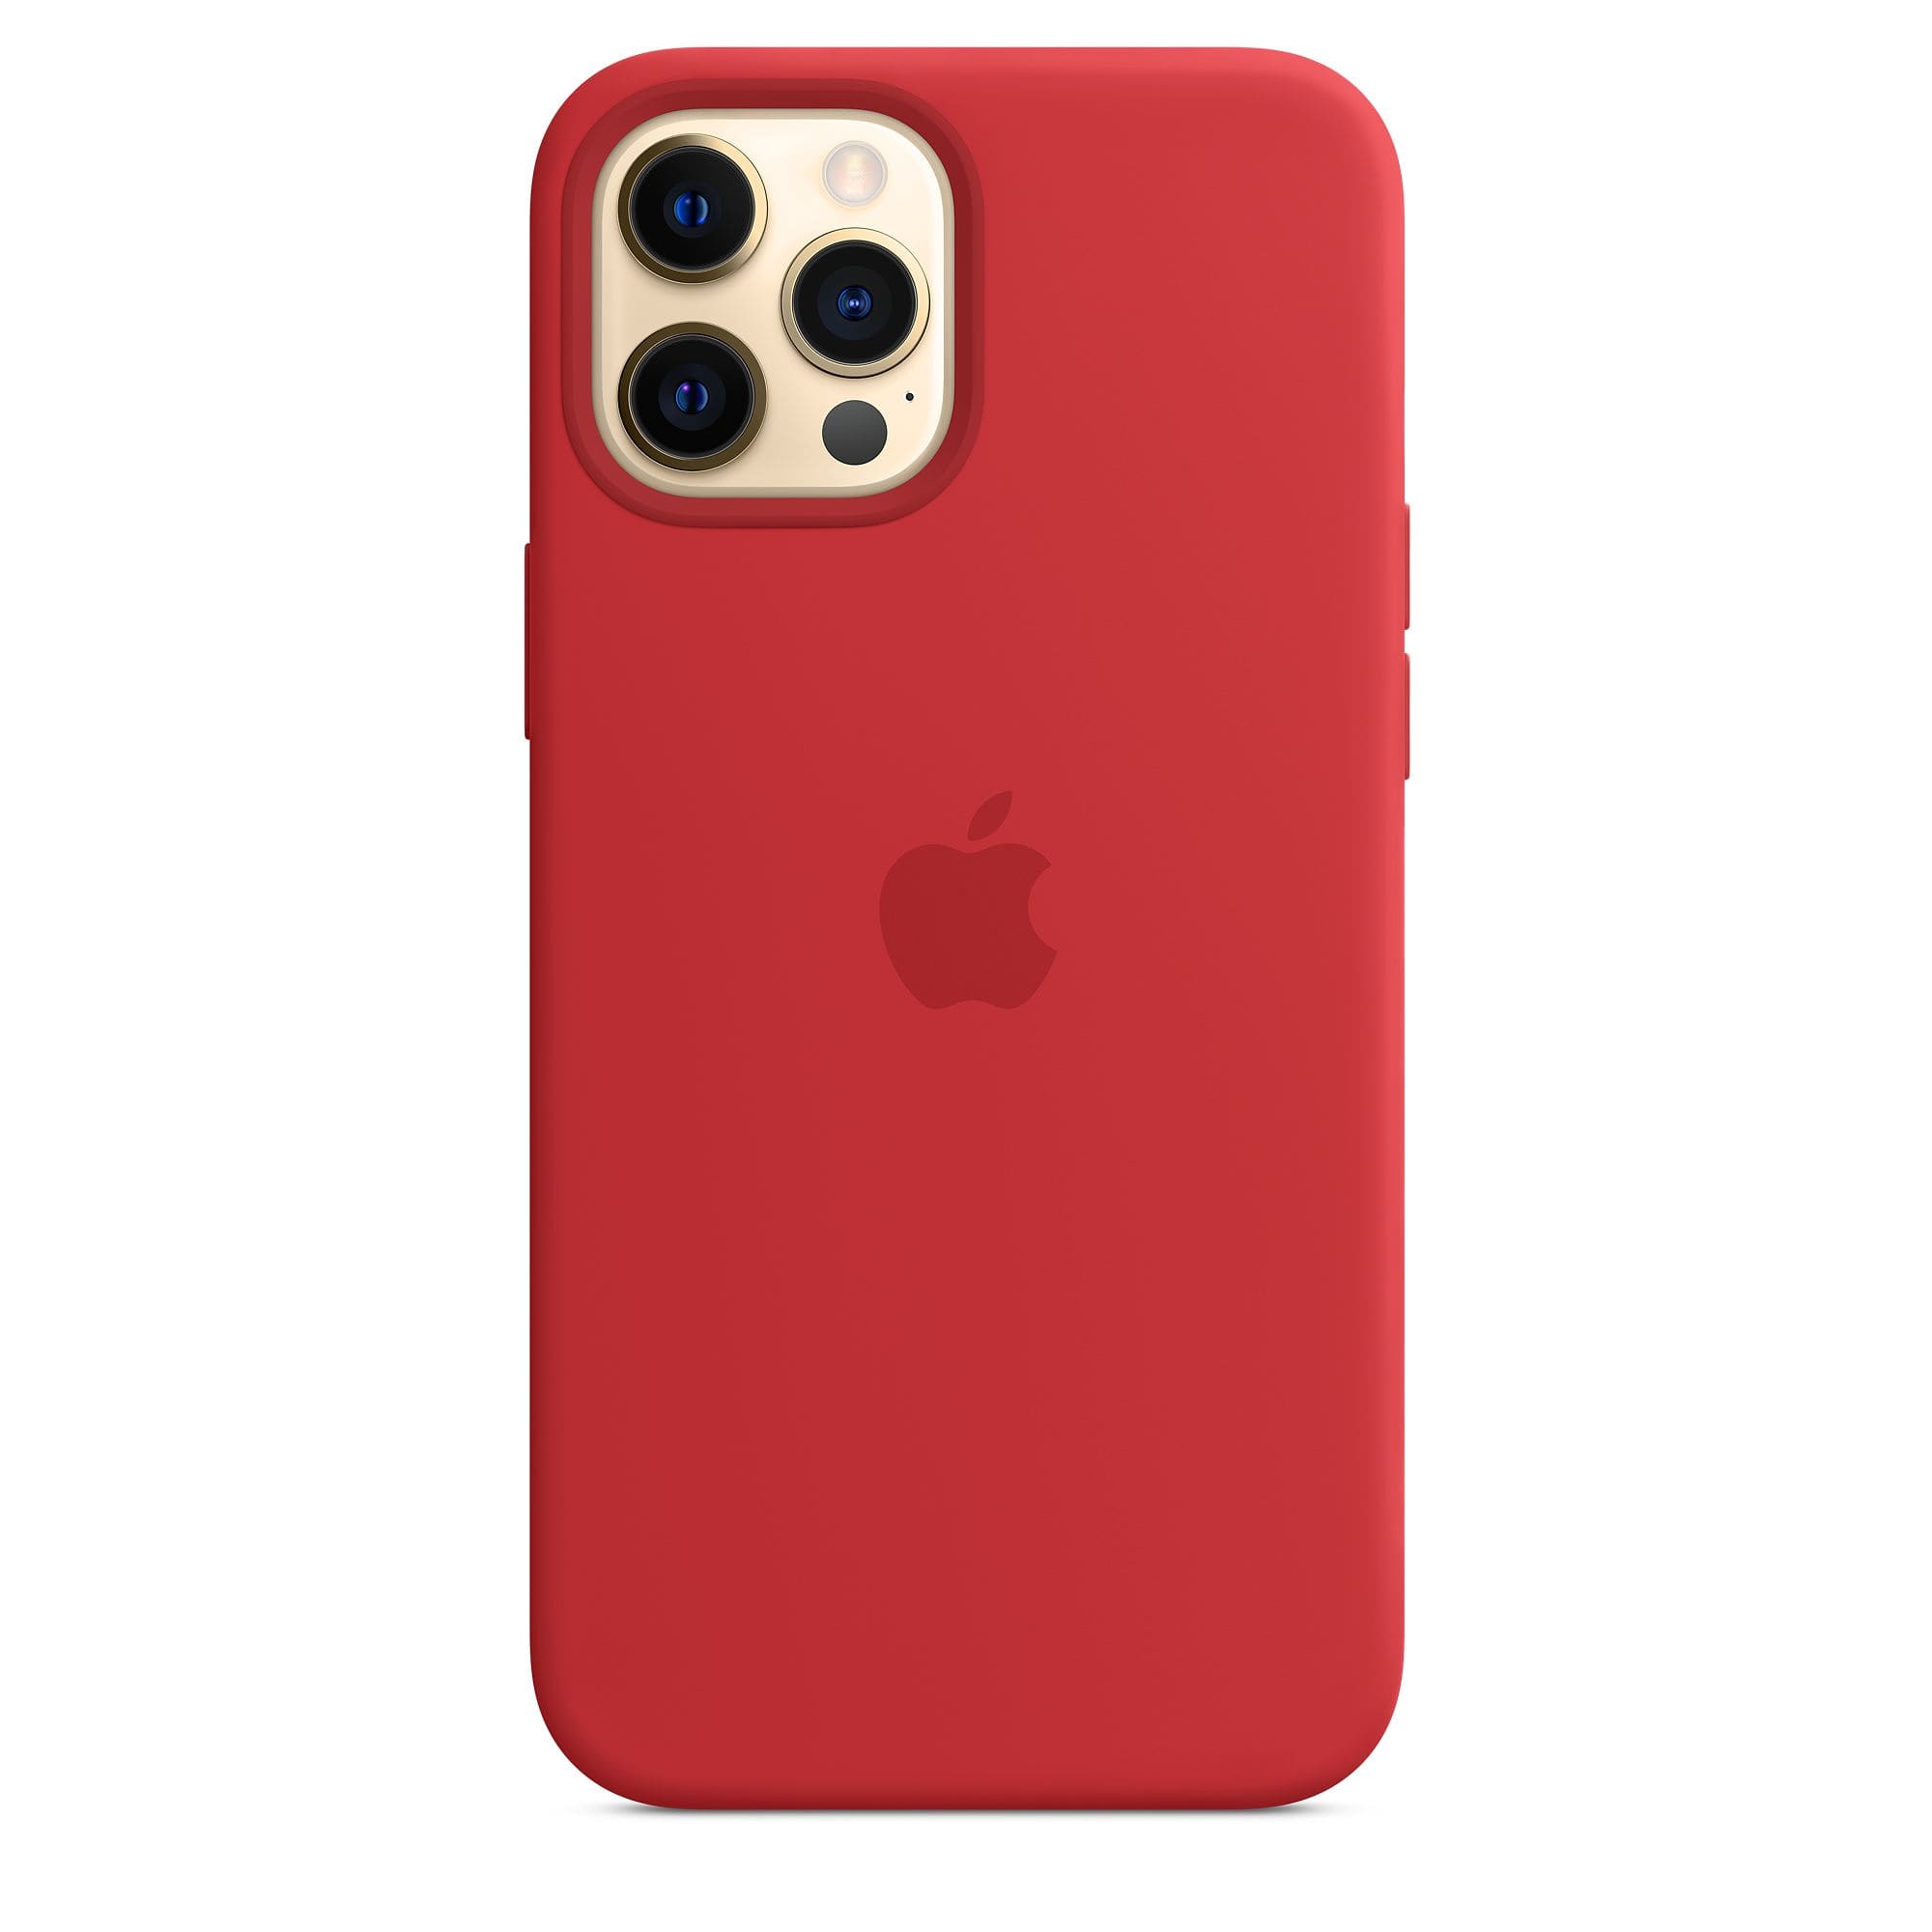 Фото — Чехол Apple MagSafe для iPhone 12 Pro Max, силикон, красный (PRODUCT)RED